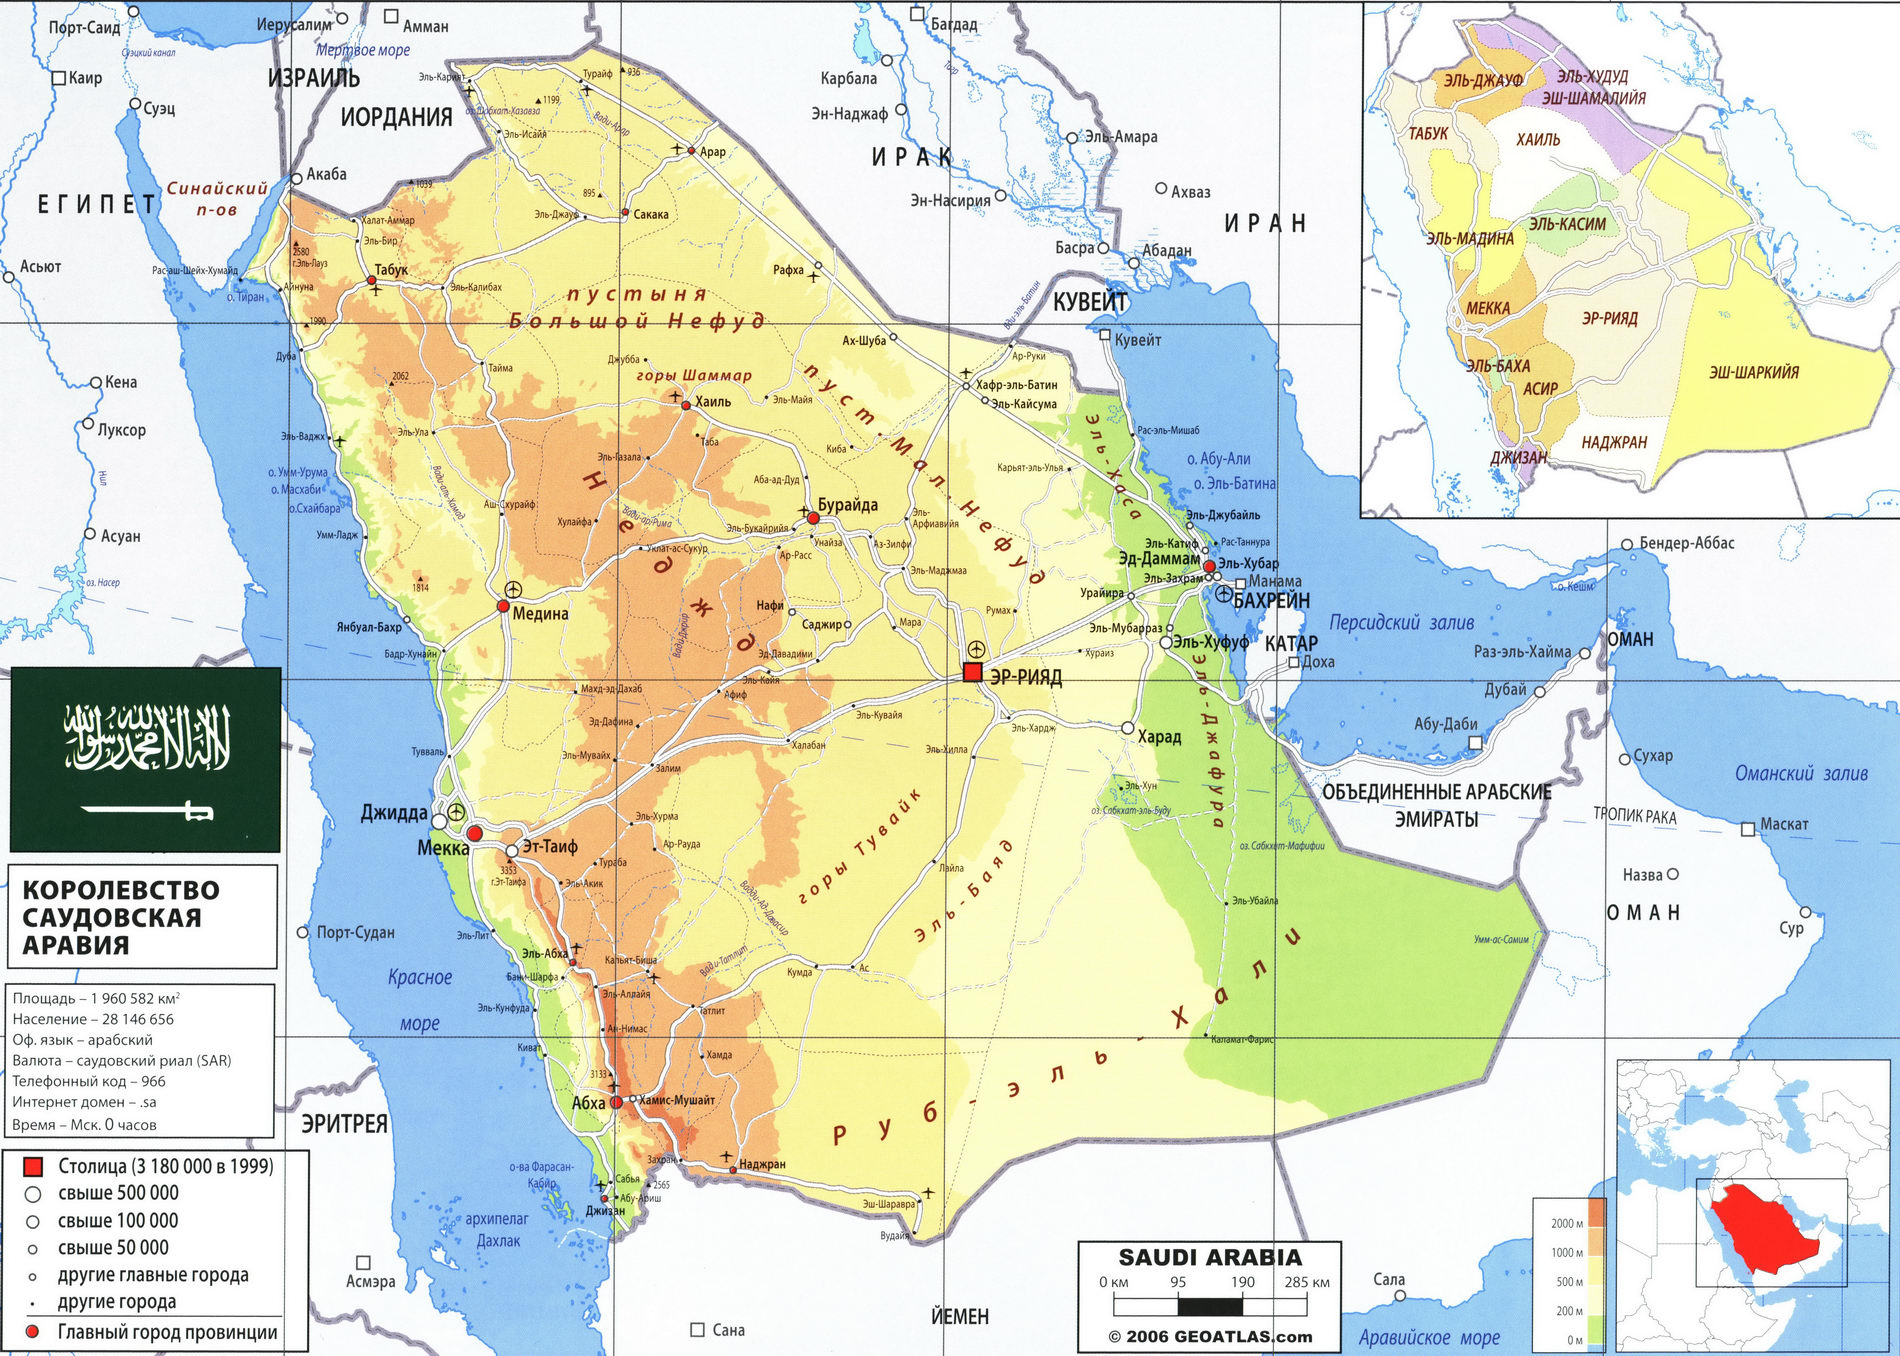 Саудовская Аравия карта на русском языке, описание страны, география -Атлас мира